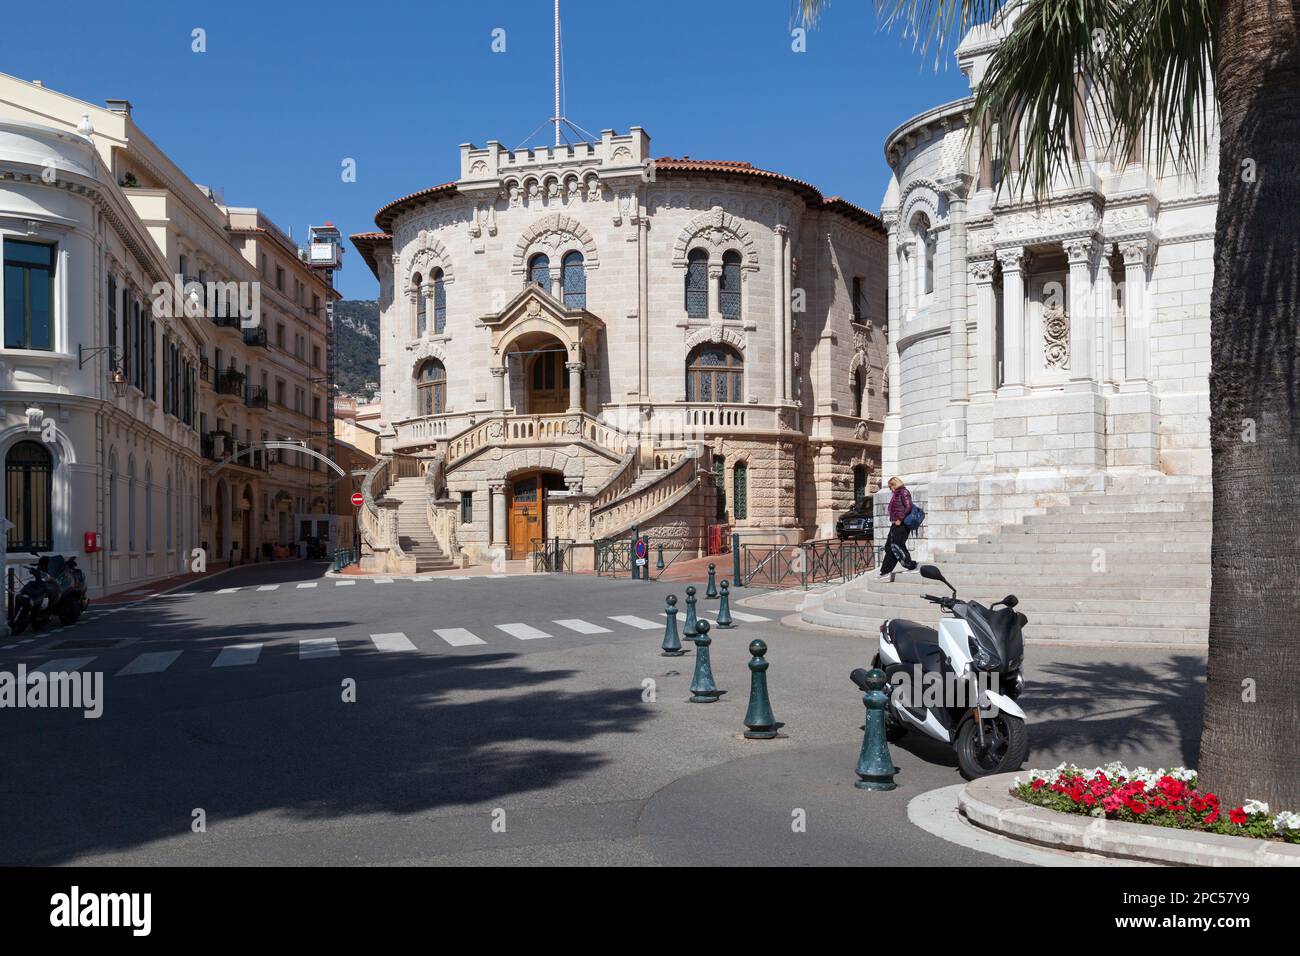 Monaco-Ville, Monaco - März 28 2019: Justizpalast zwischen der Kathedrale und dem ehemaligen Gebäude des Nationalrates. Stockfoto